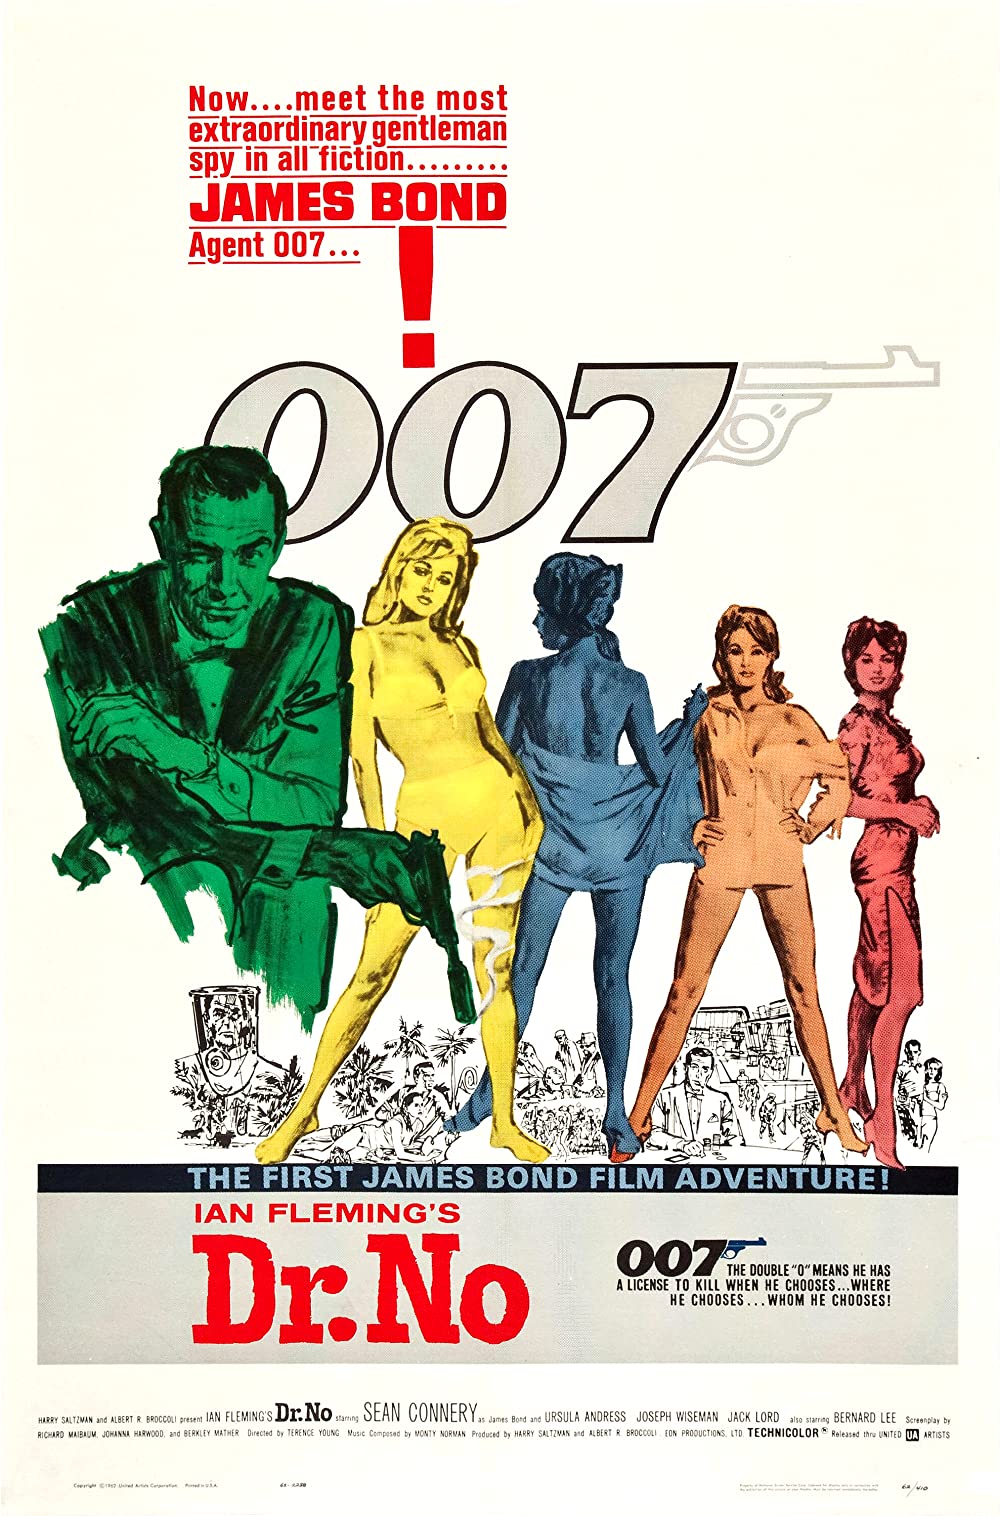 Filmbeschreibung zu James Bond jagt Dr. No